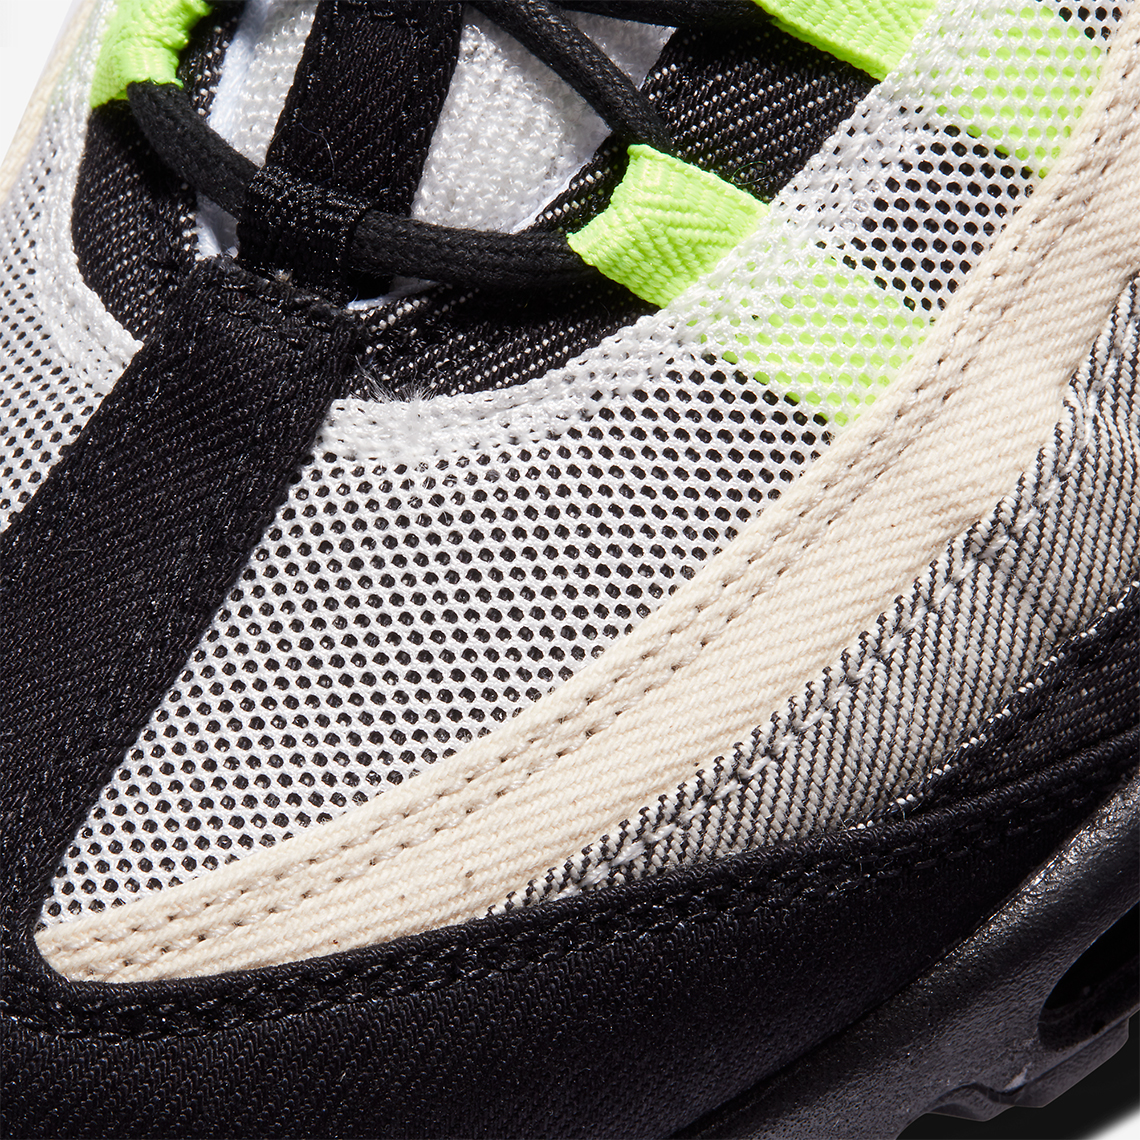 Denham Nike Air Max 95 Release Info | SneakerNews.com